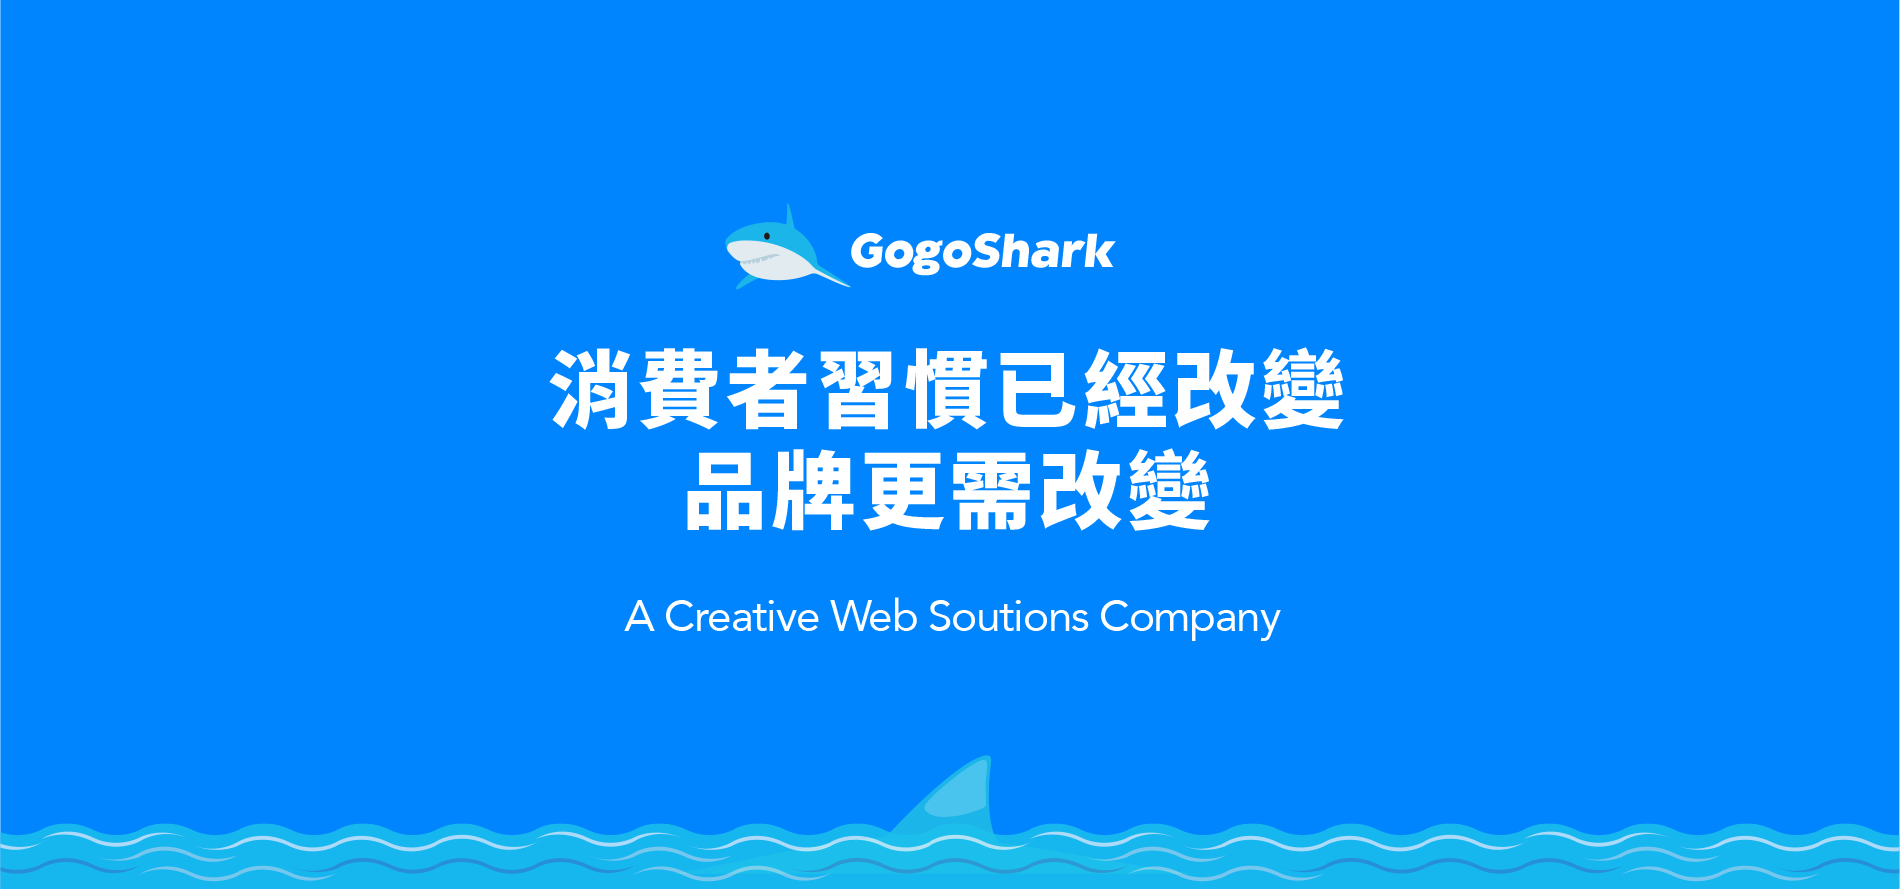 GogoShark-For-better-web-design-environment-in-Taiwan